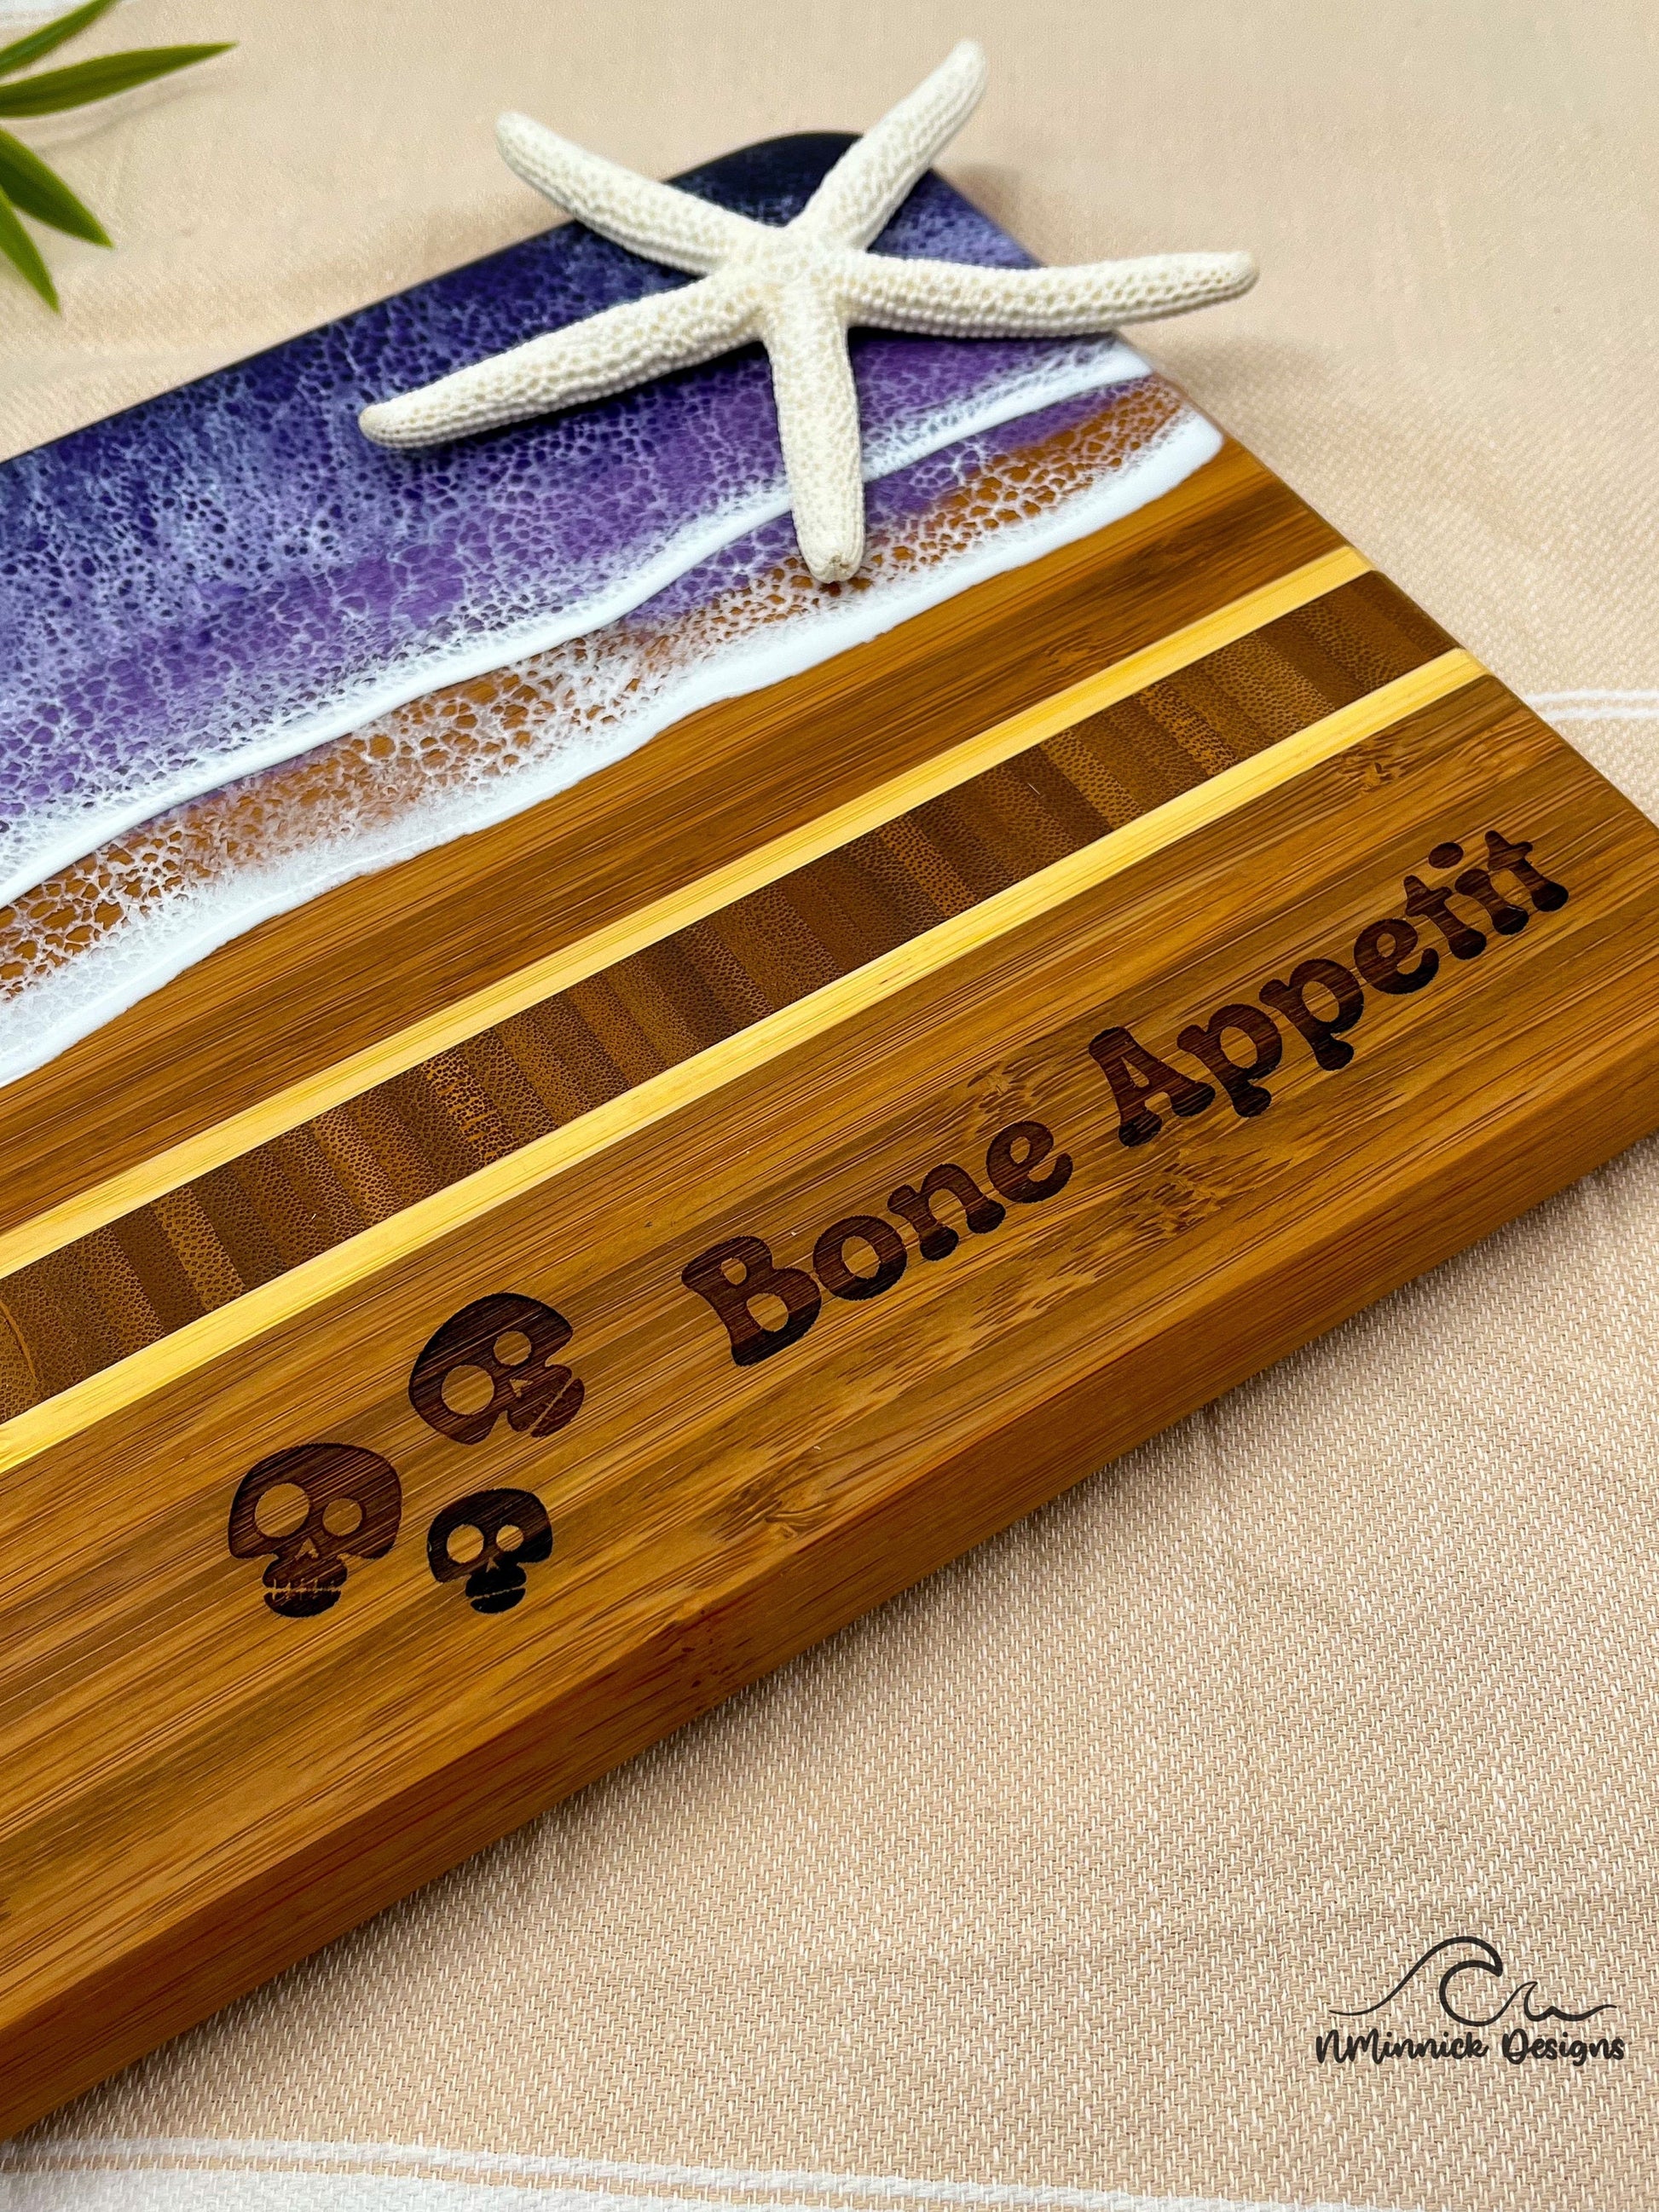 Bone Appetit - Halloween Charcuterie Board, Halloween Kitchen, Coastal Halloween, Halloween Humor, Halloween Party Decor, Spooky Season